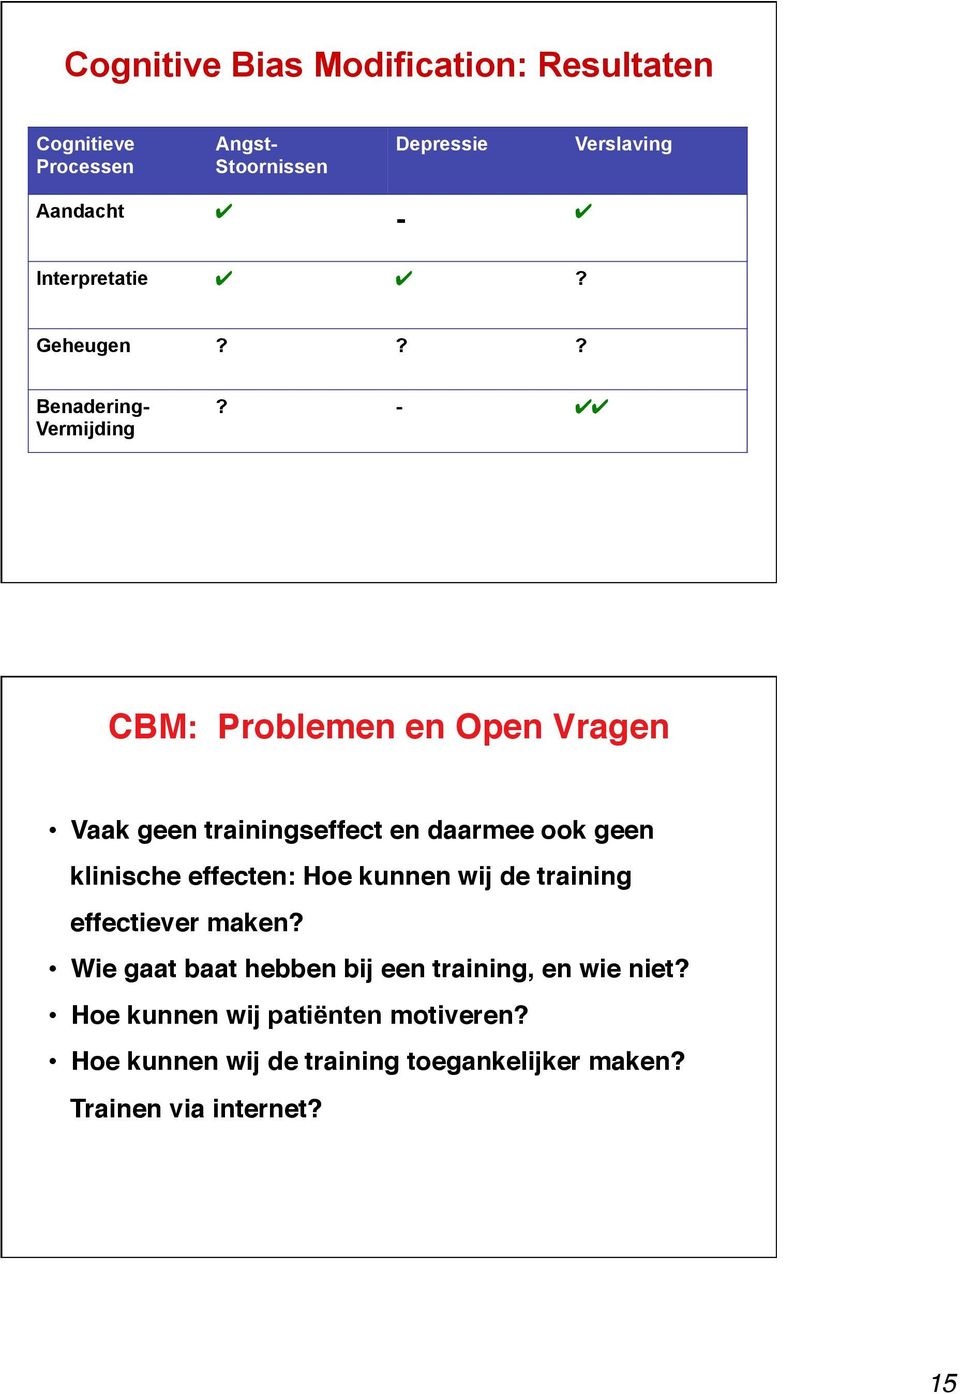 - CBM: Problemen en Open Vragen" Vaak geen trainingseffect en daarmee ook geen klinische effecten: Hoe kunnen wij de